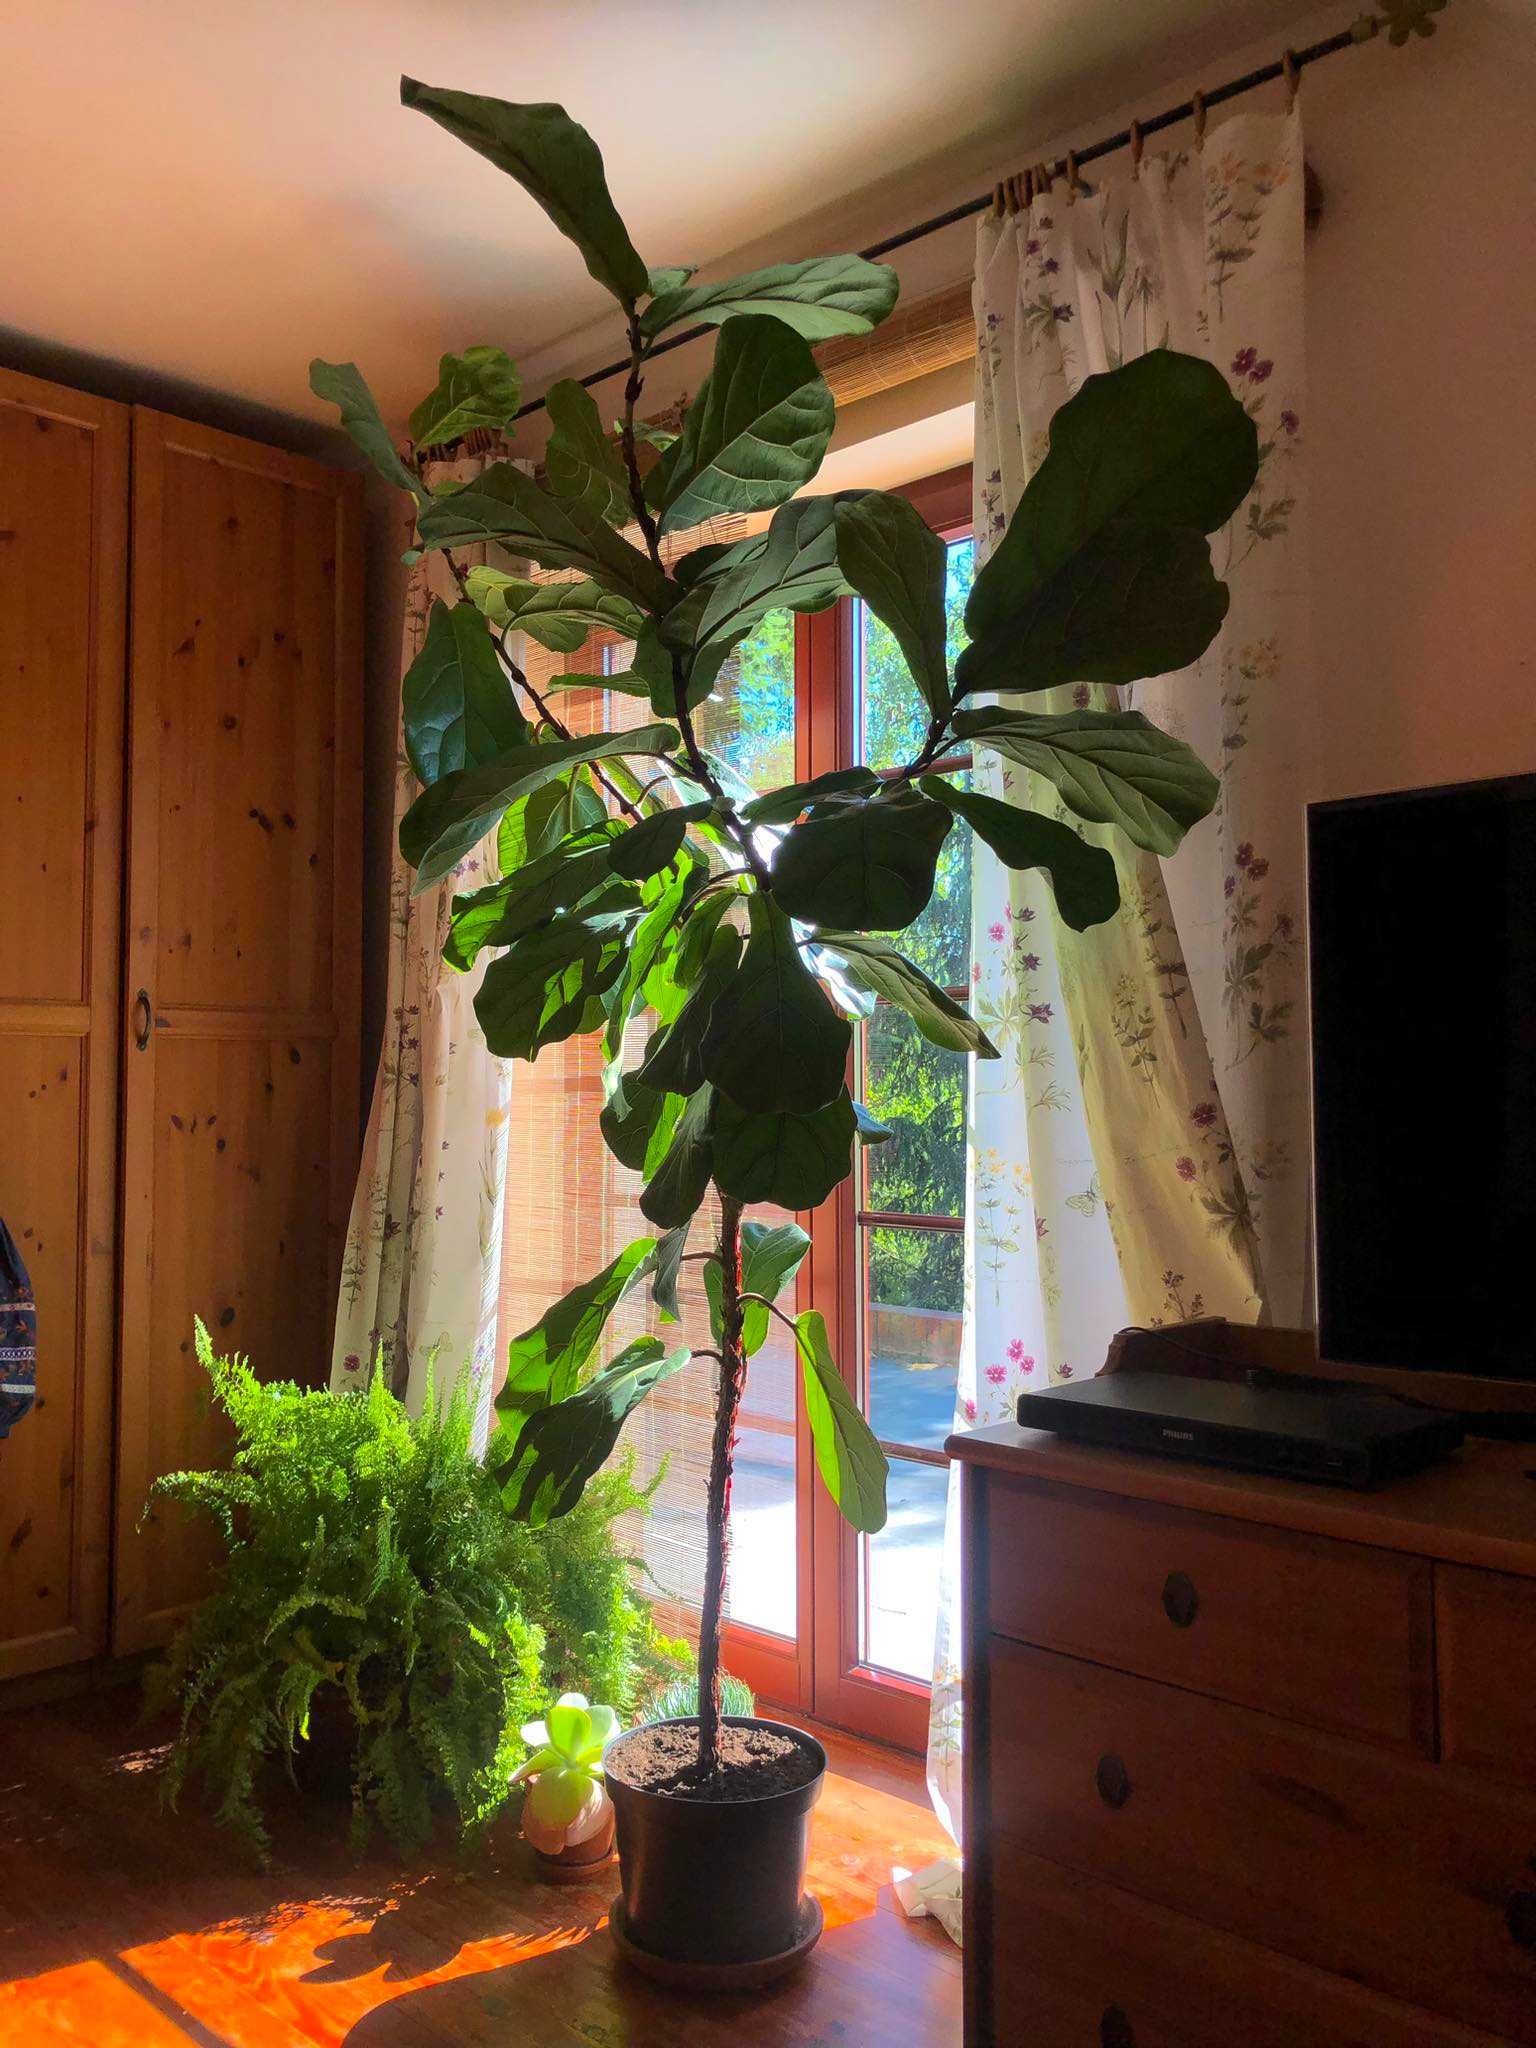 Fikus Dębolistny, figowiec Lirolistny, Ficus Iyrata, duży,  2m, 180 cm